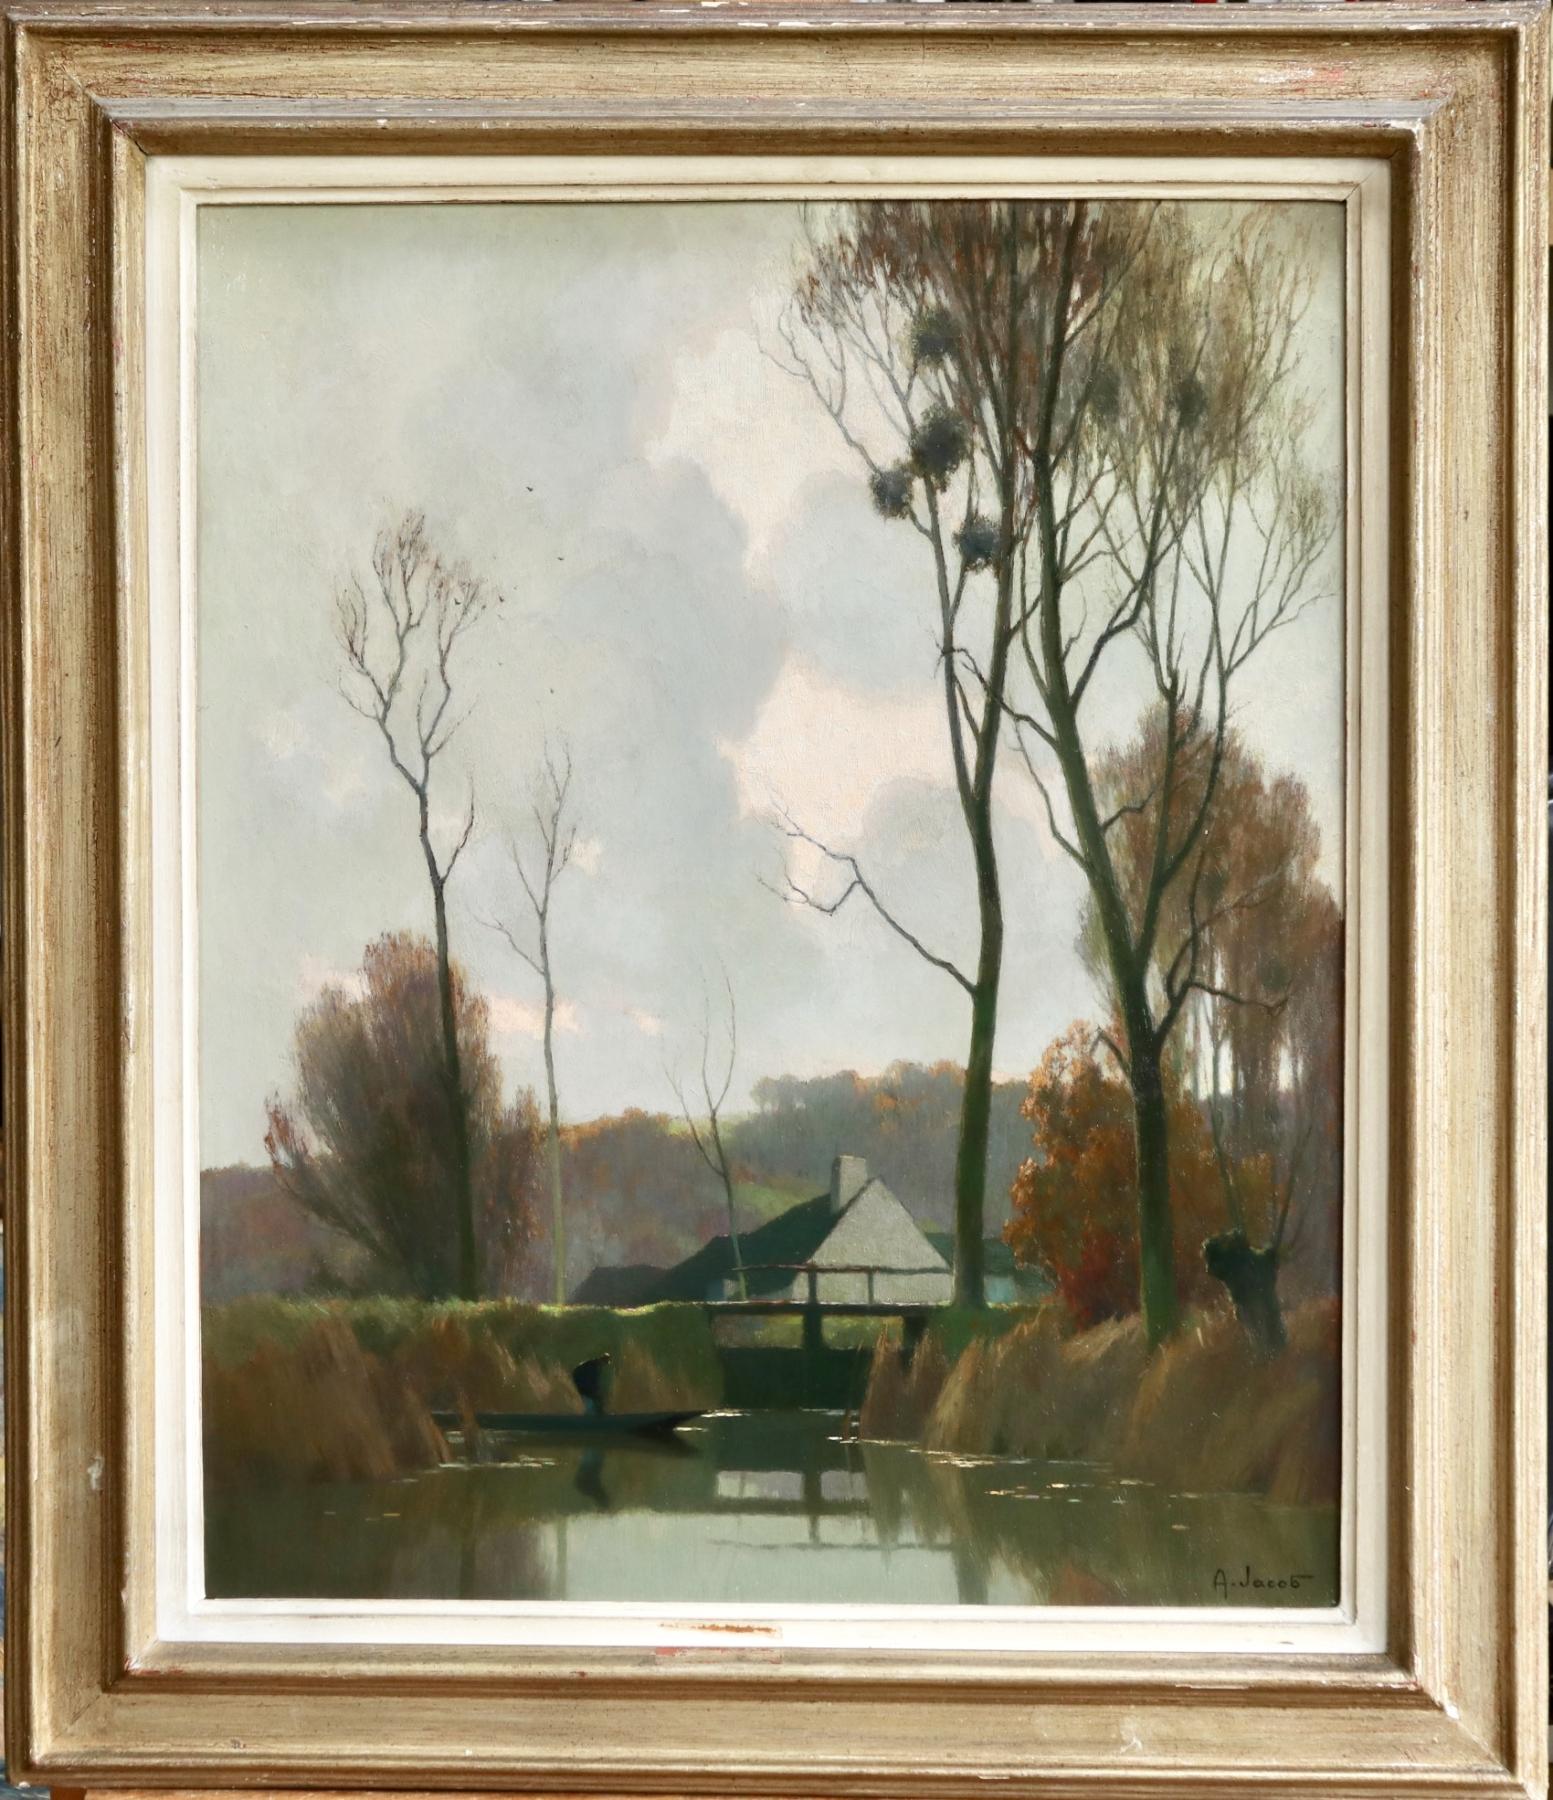 Novembre a la Reserve - Impressionist Oil, River in Landscape by Alexandre Jacob - Painting by Alexandre Louis Jacob